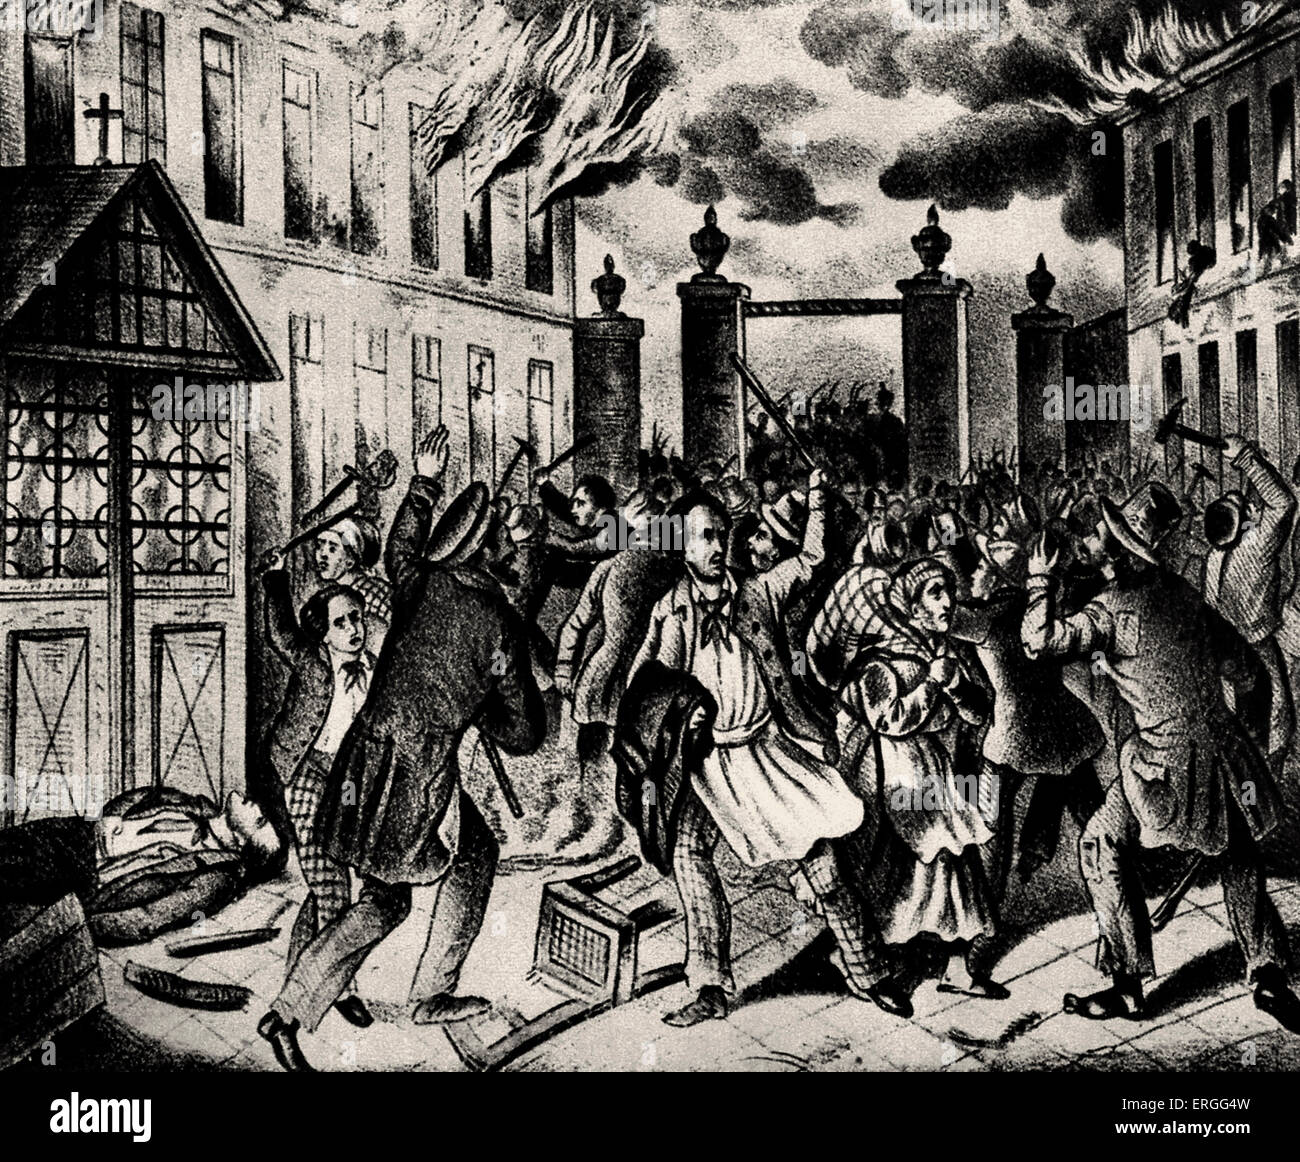 Révolution autrichienne : des barricades sur St. Marxer Linie, Vienne. 1848. Près de murs de la ville. La lithographie. De mars 1848 à juillet Banque D'Images